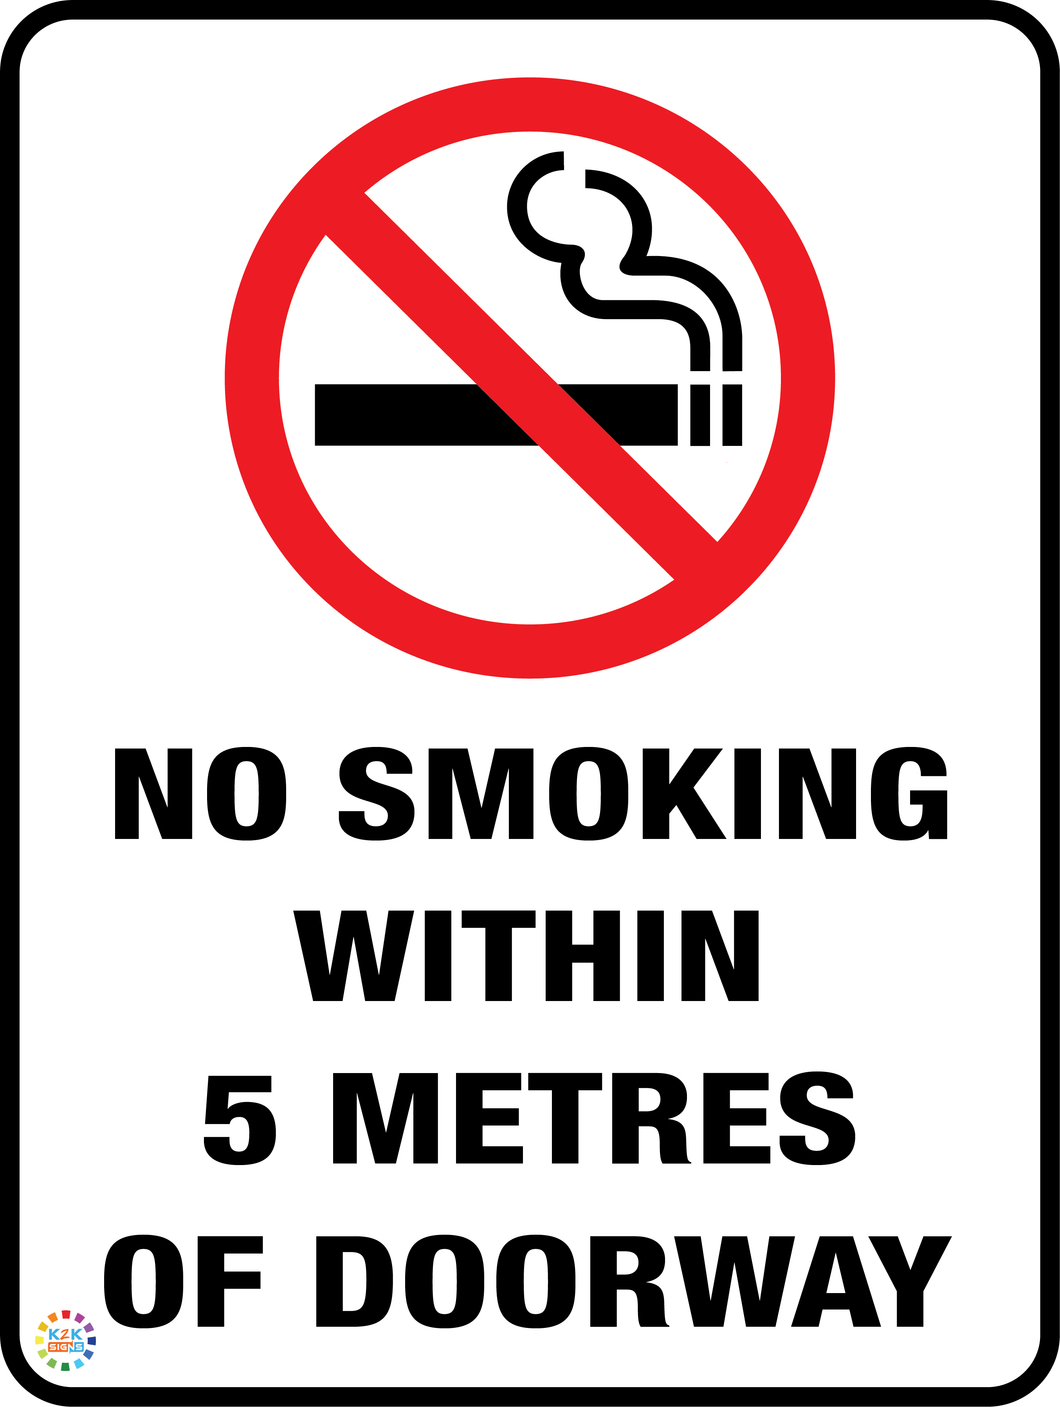 No Smoking Within 5 Metres Of Doorway Sign